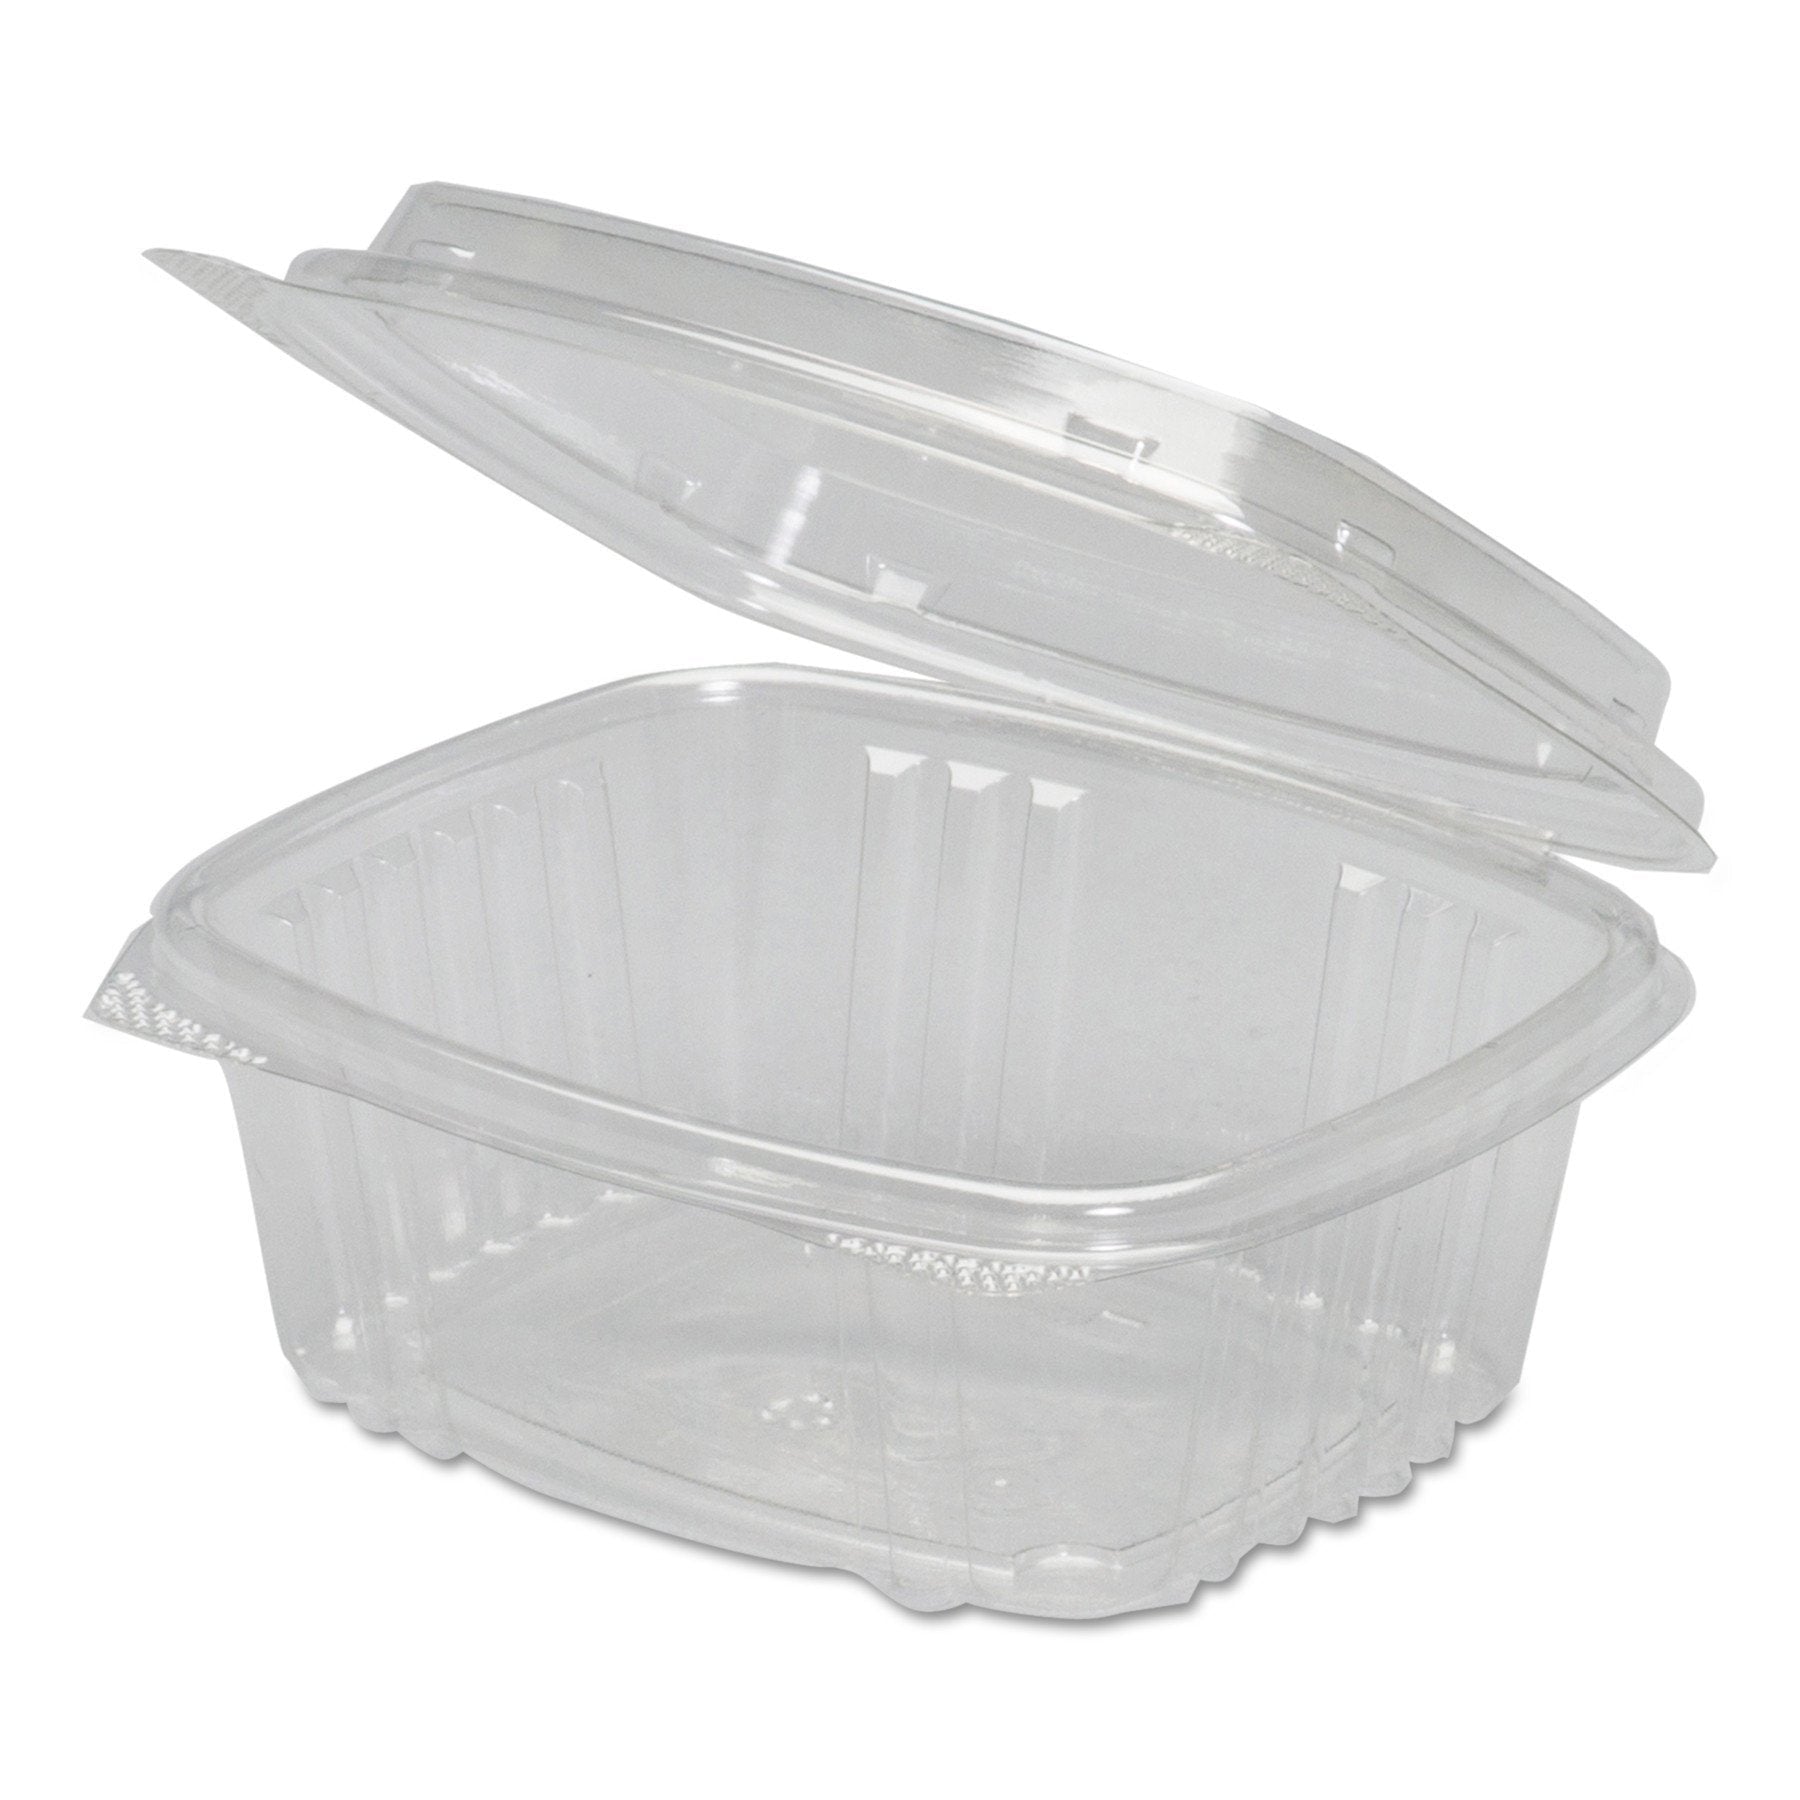 8 oz. Translucent Plastic Deli Container with Lid